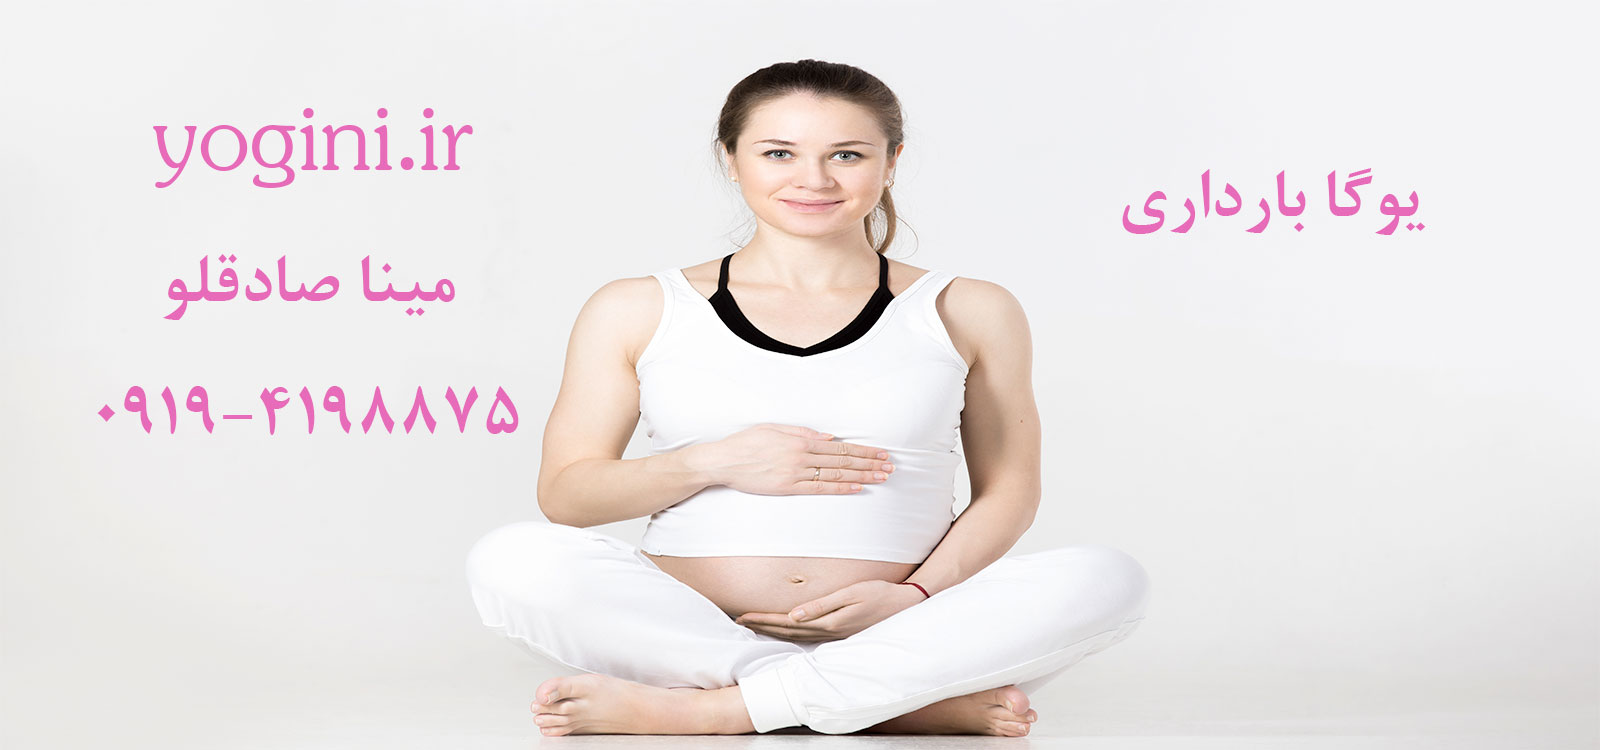 تصویر یوگا بارداری و تاثیر یوگا در دوران بارداری و حاملگی بر روی مادران باردار و حامله